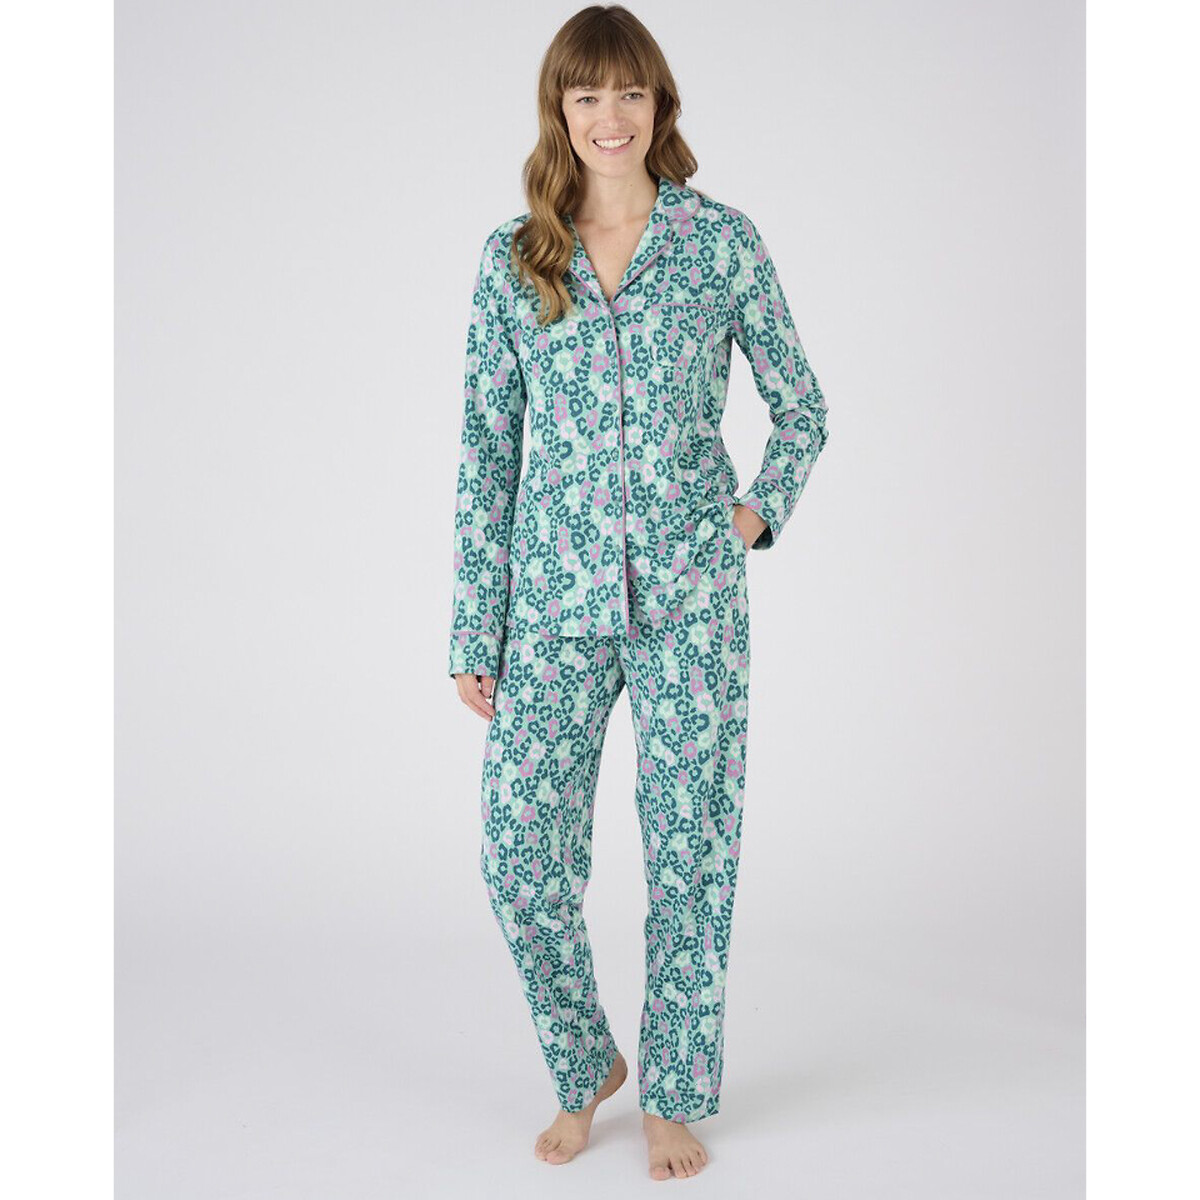 Комплект пижамный, Thermolactyl La Redoute L разноцветный комплект пижамный из жаккарда la redoute xs синий